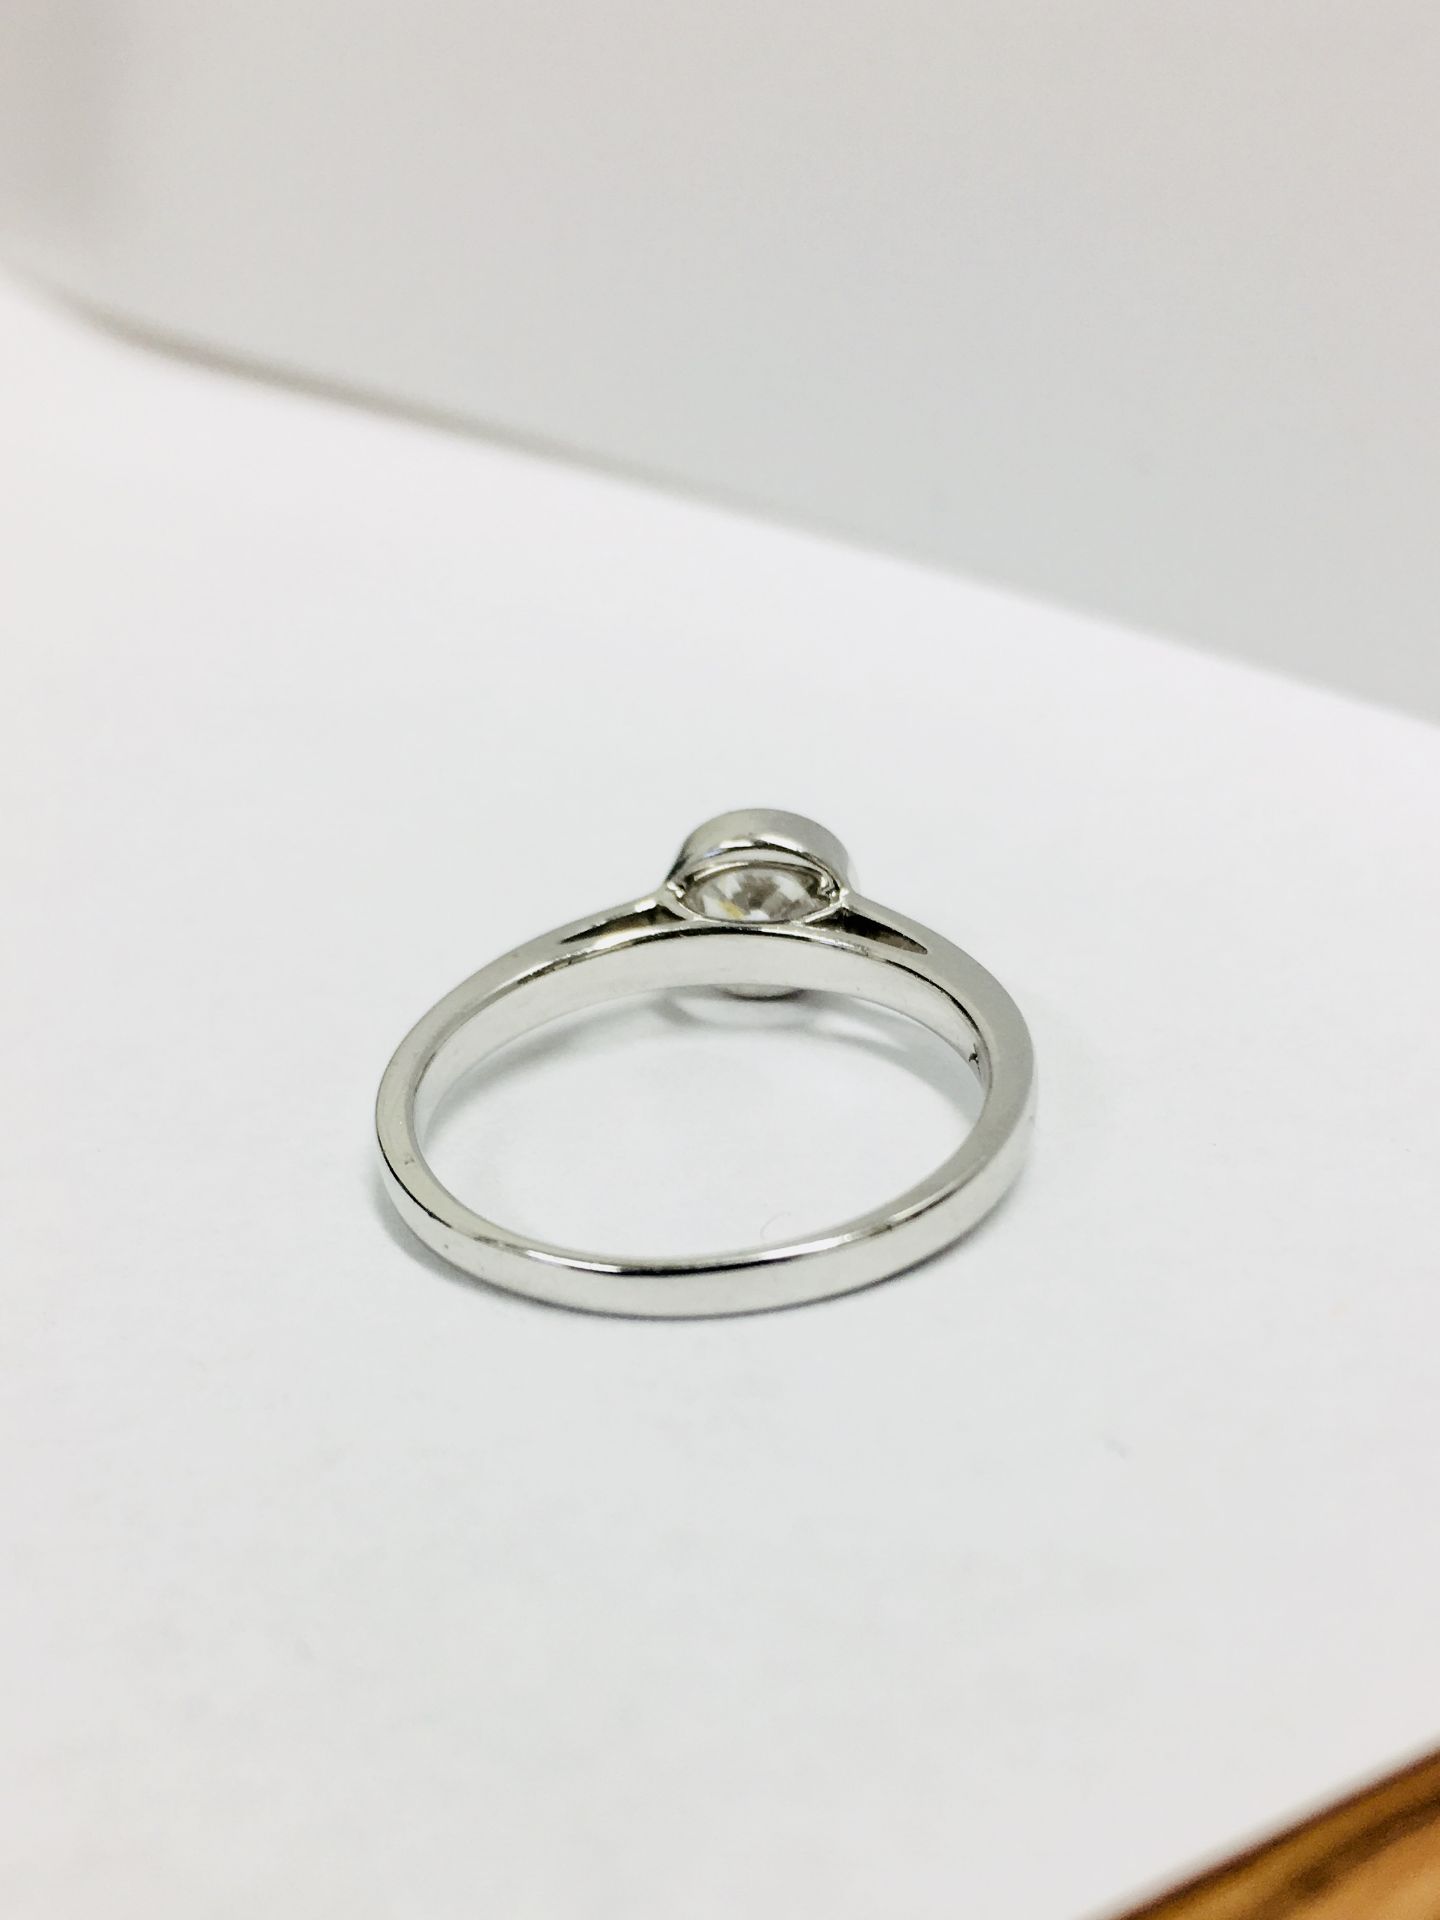 Platinum diamond solitaire ring,0.50ct brilliant cut diamond h colour vs clarity (clarity enhanced) - Image 4 of 4